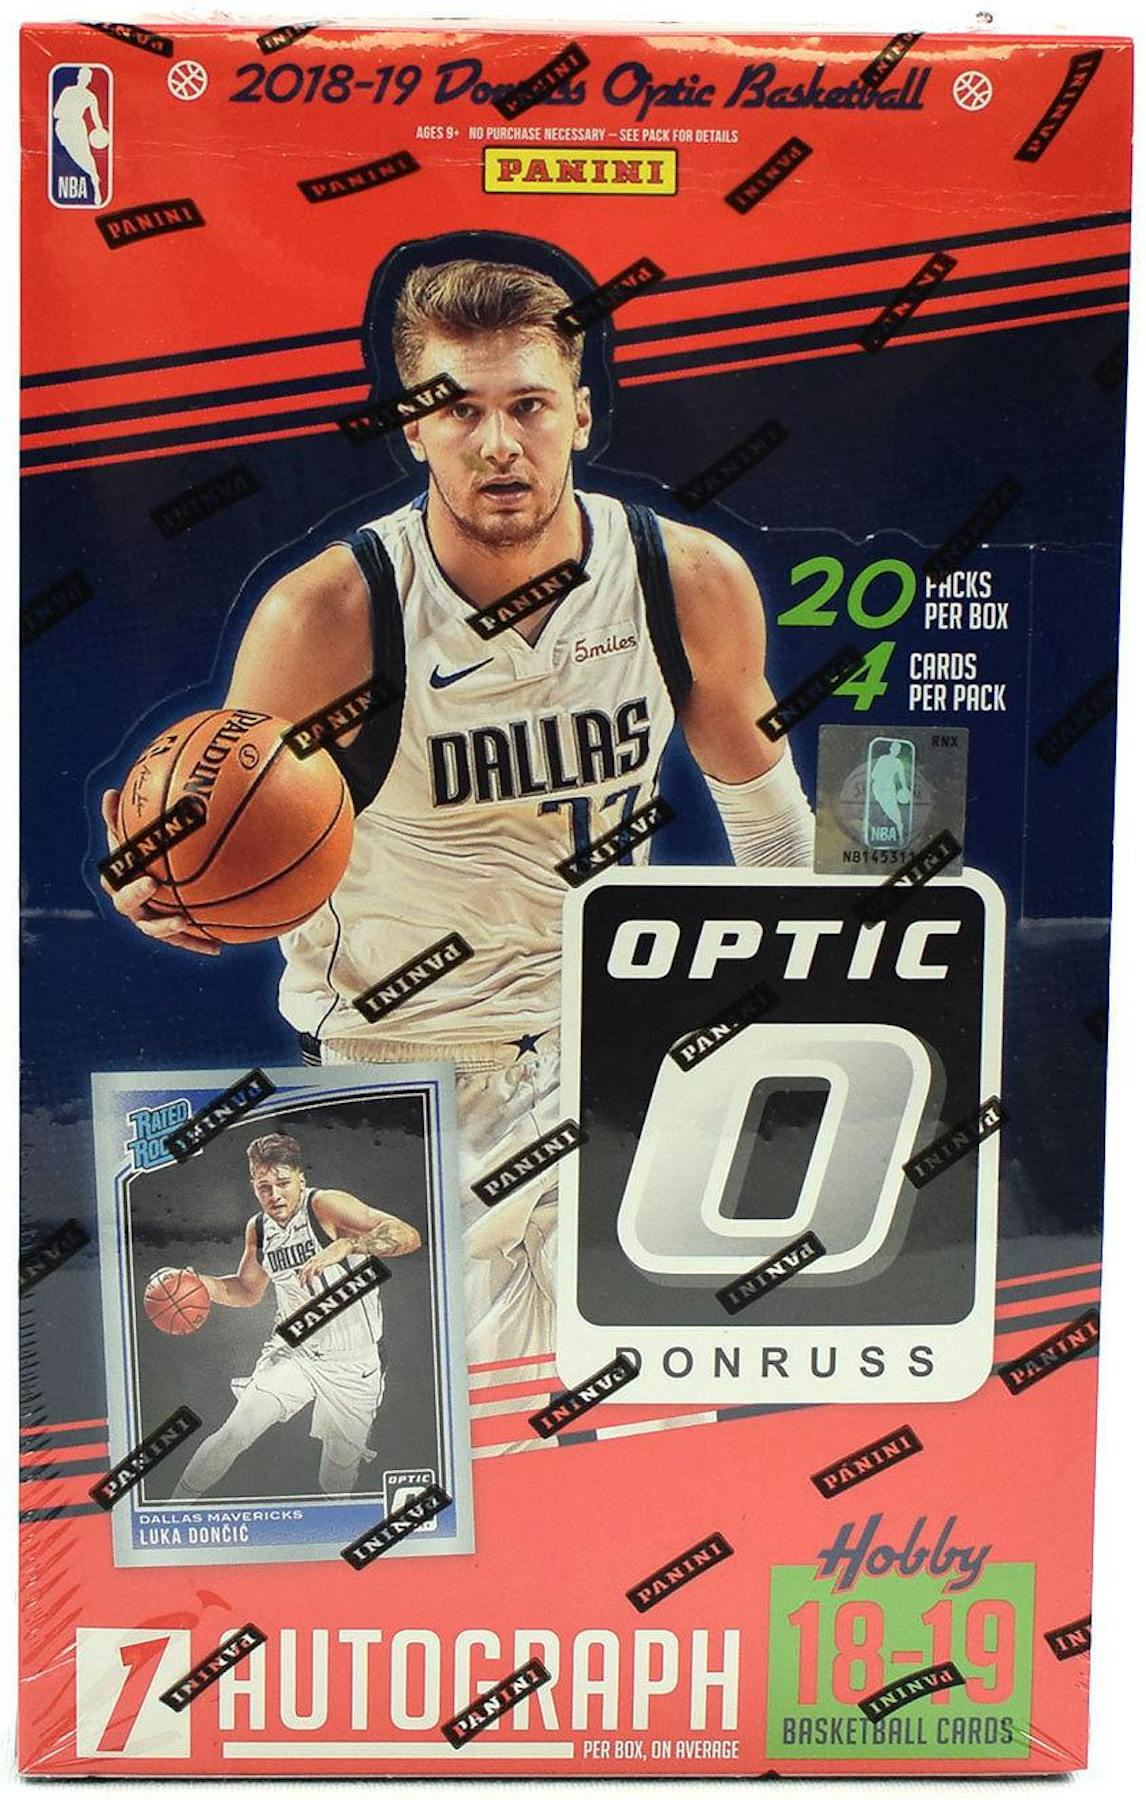 2018/19 Panini Donruss Optic Basketball Hobby 12-Box Case | DA Card World1146 x 1800